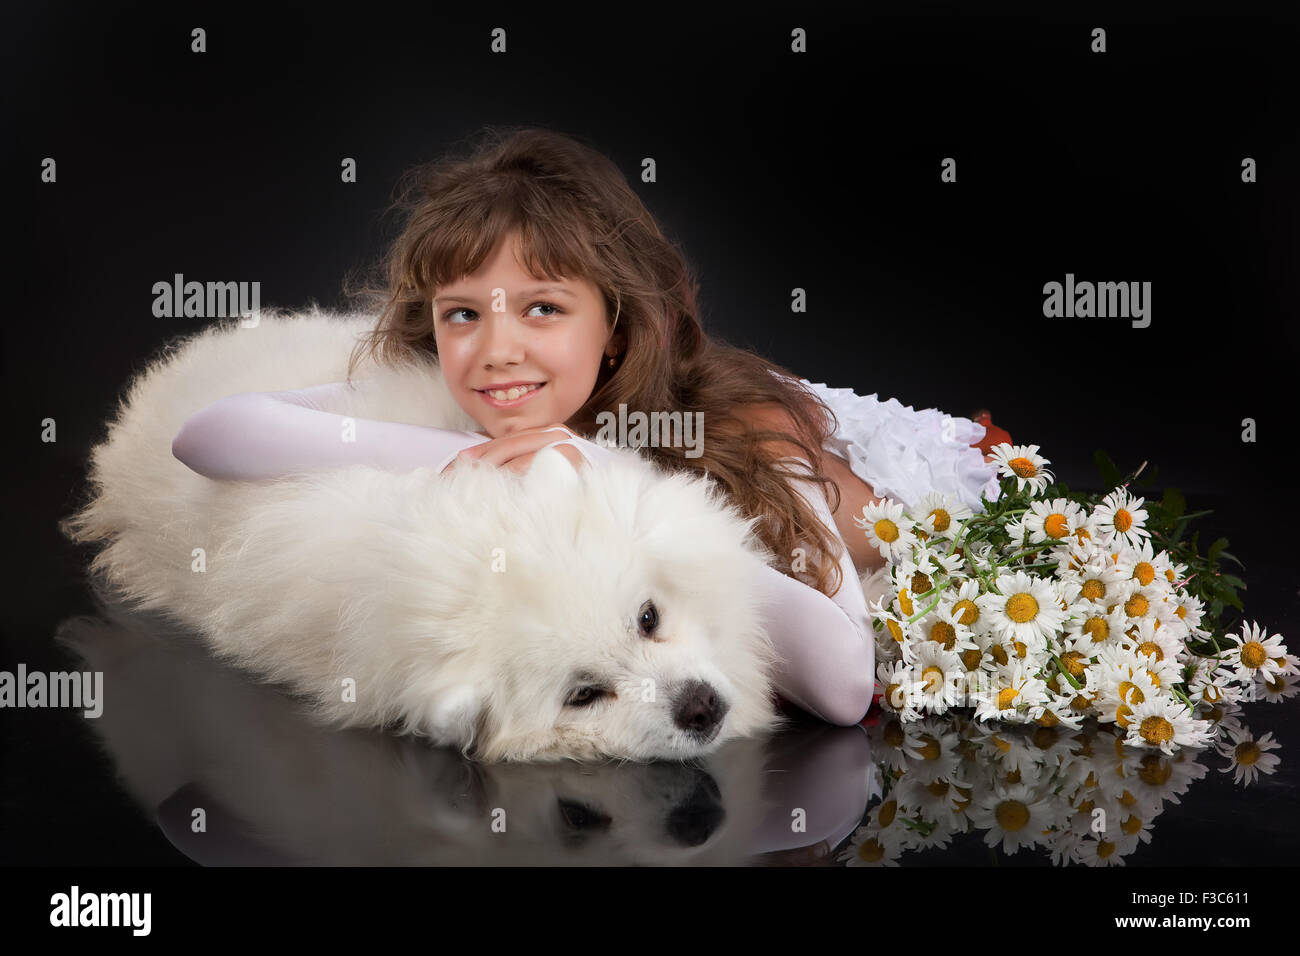 Hund Tier Kind Mädchen kleine reinrassige Tiere weibliche Kindheit Freundschaft Person Farbe Glück spielen kaukasischen Nahaufnahme Stockfoto